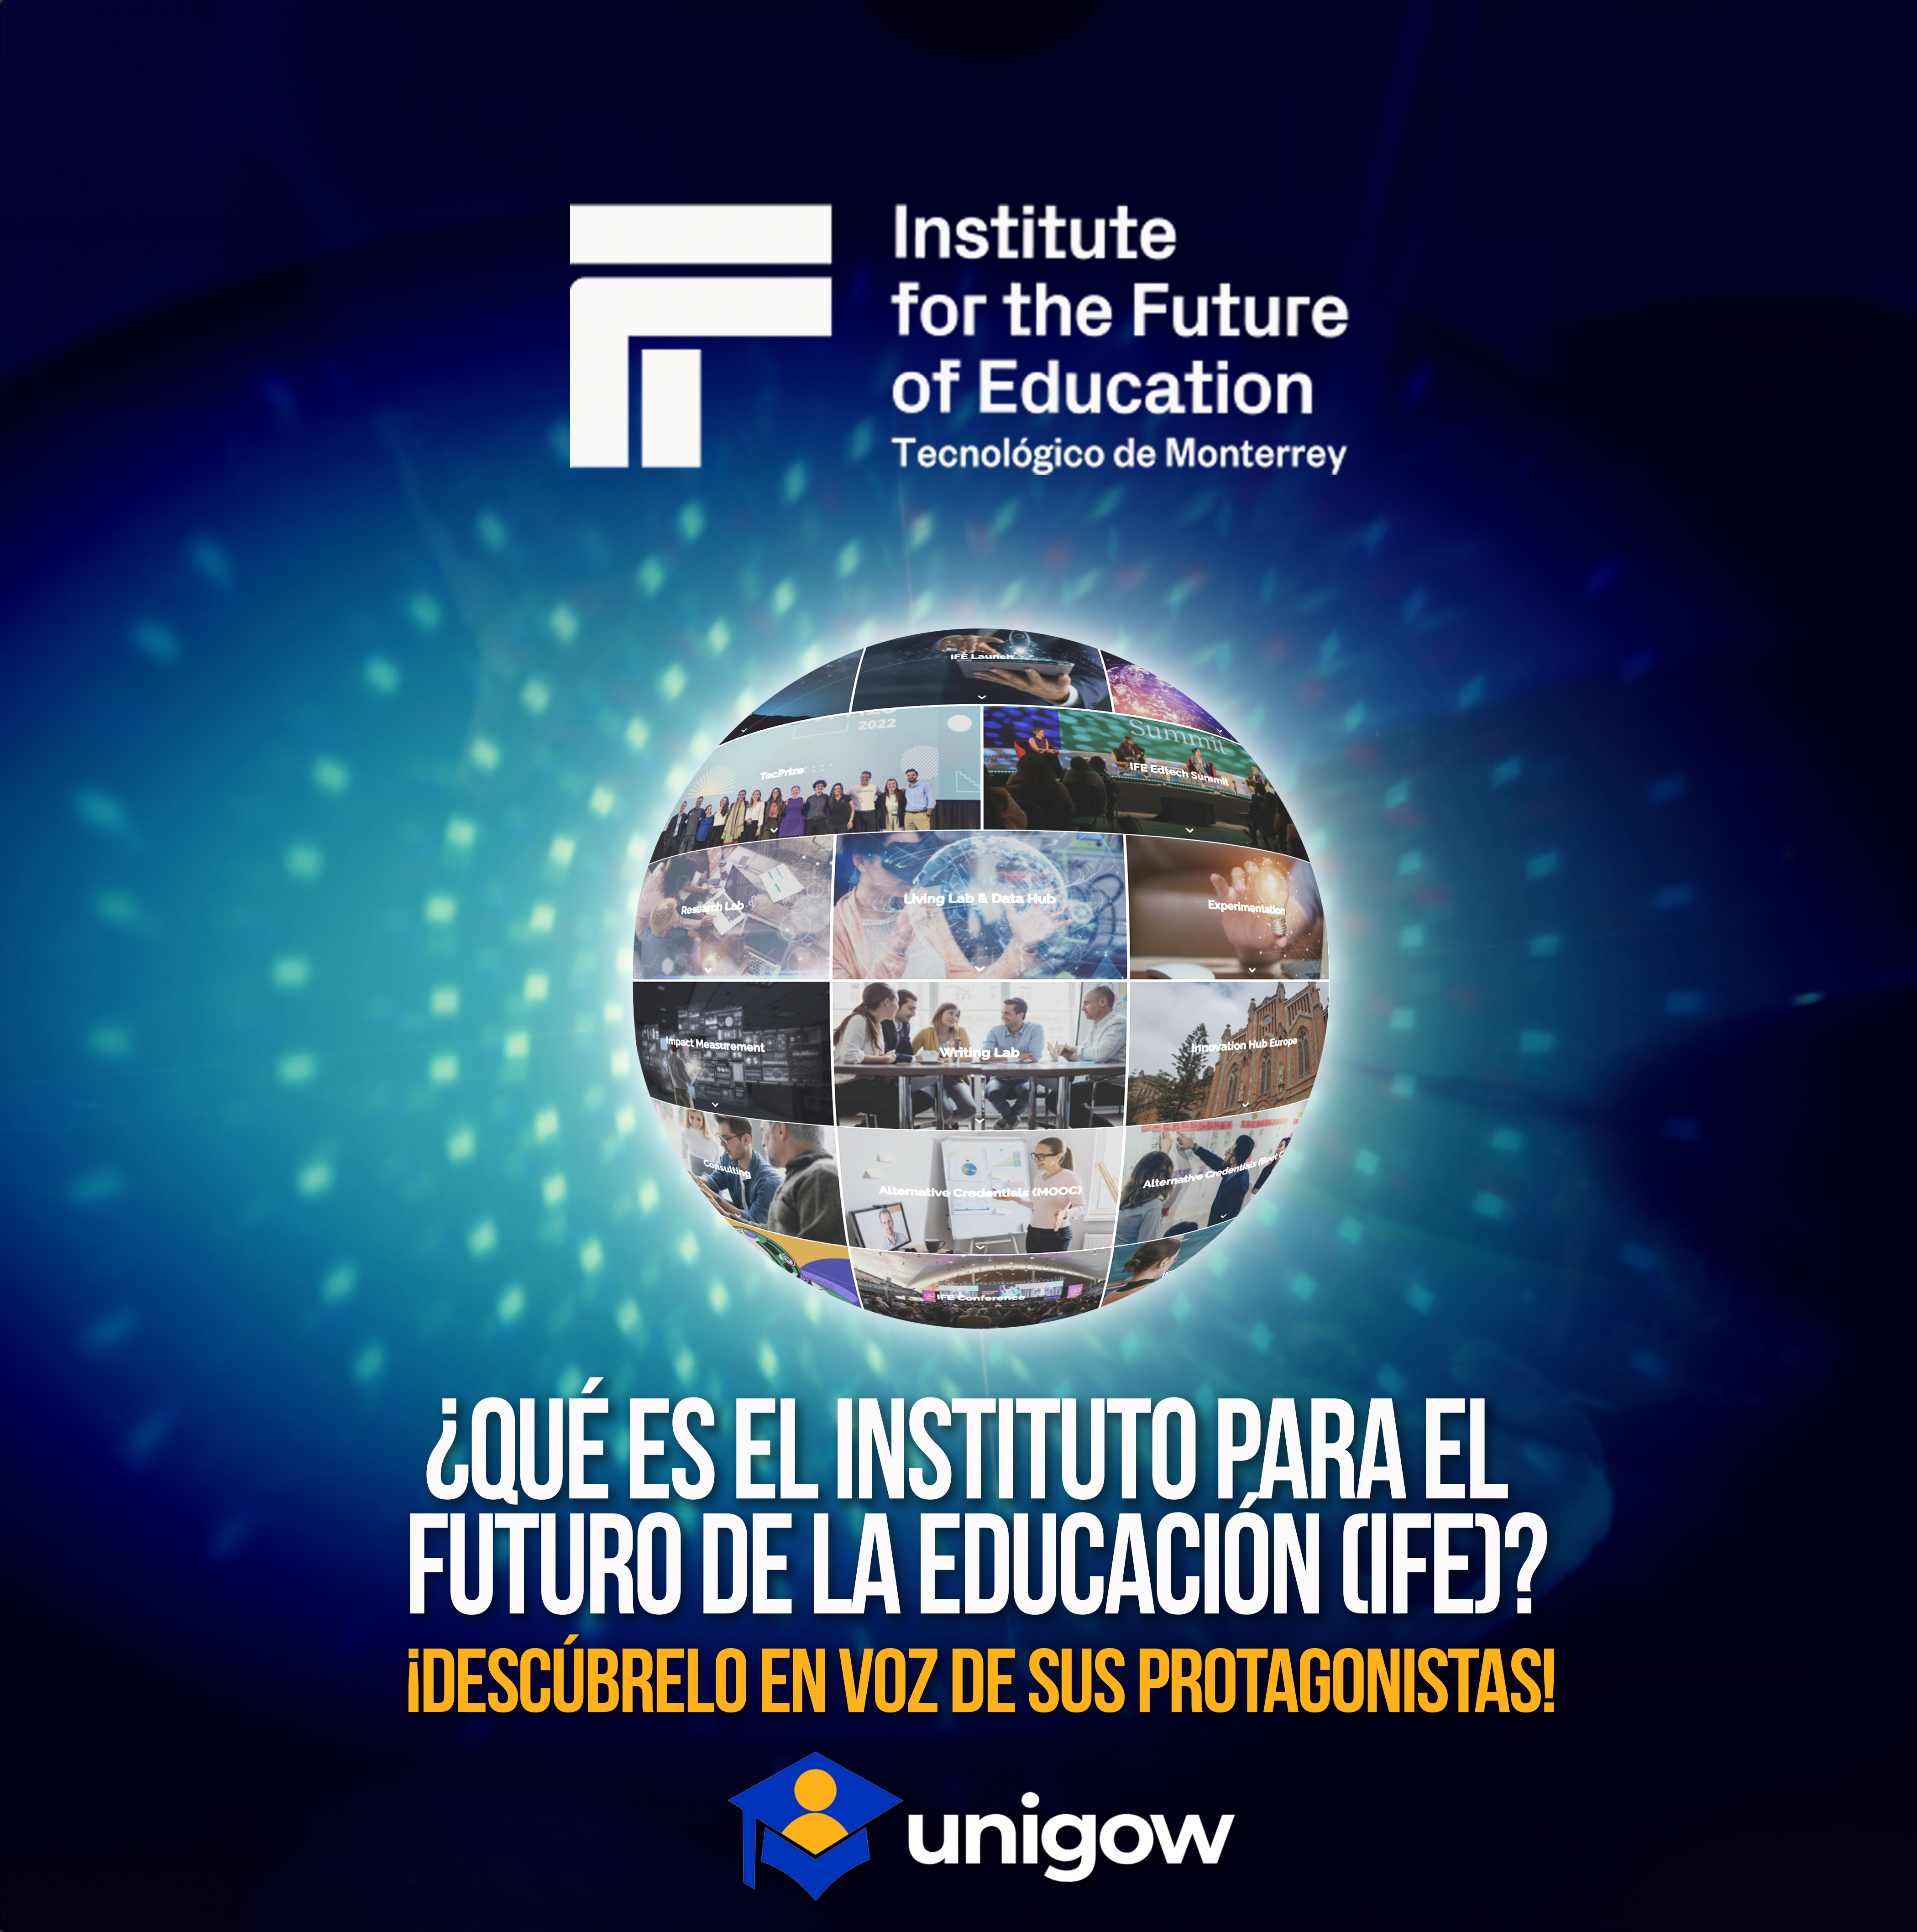 Institute
for the Future
of Education

Tecnolégico de Monterrey

    
  

nL
AAR

iDESCUBRELO EN VOZ DE SUS PROTAGONISTAS!

» R
® uhigow